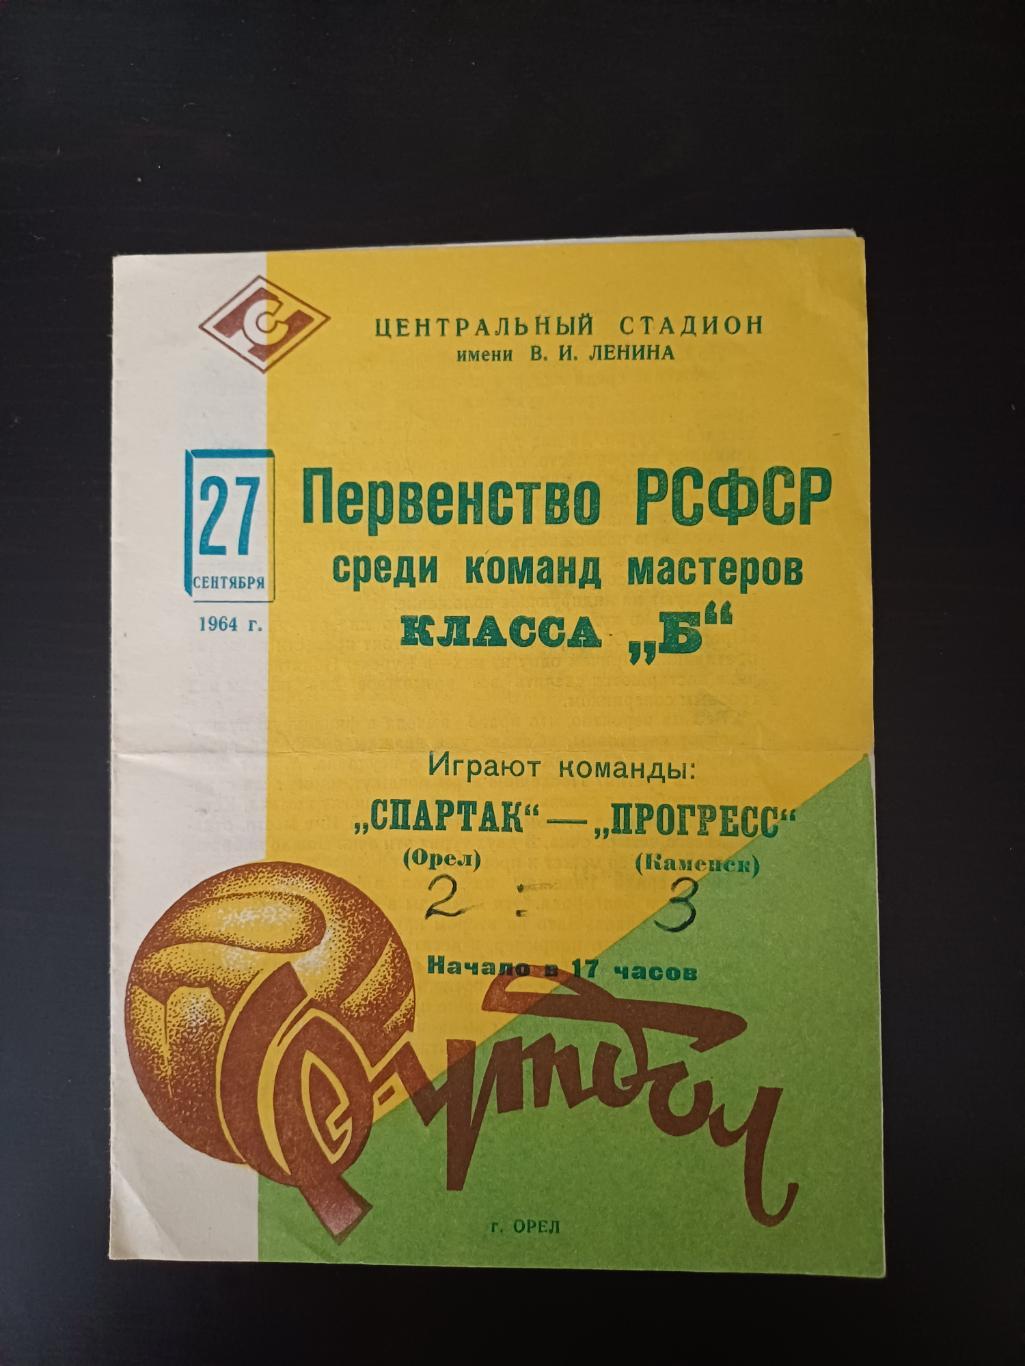 Спартак (Орел) - Прогресс (Каменск) 1964